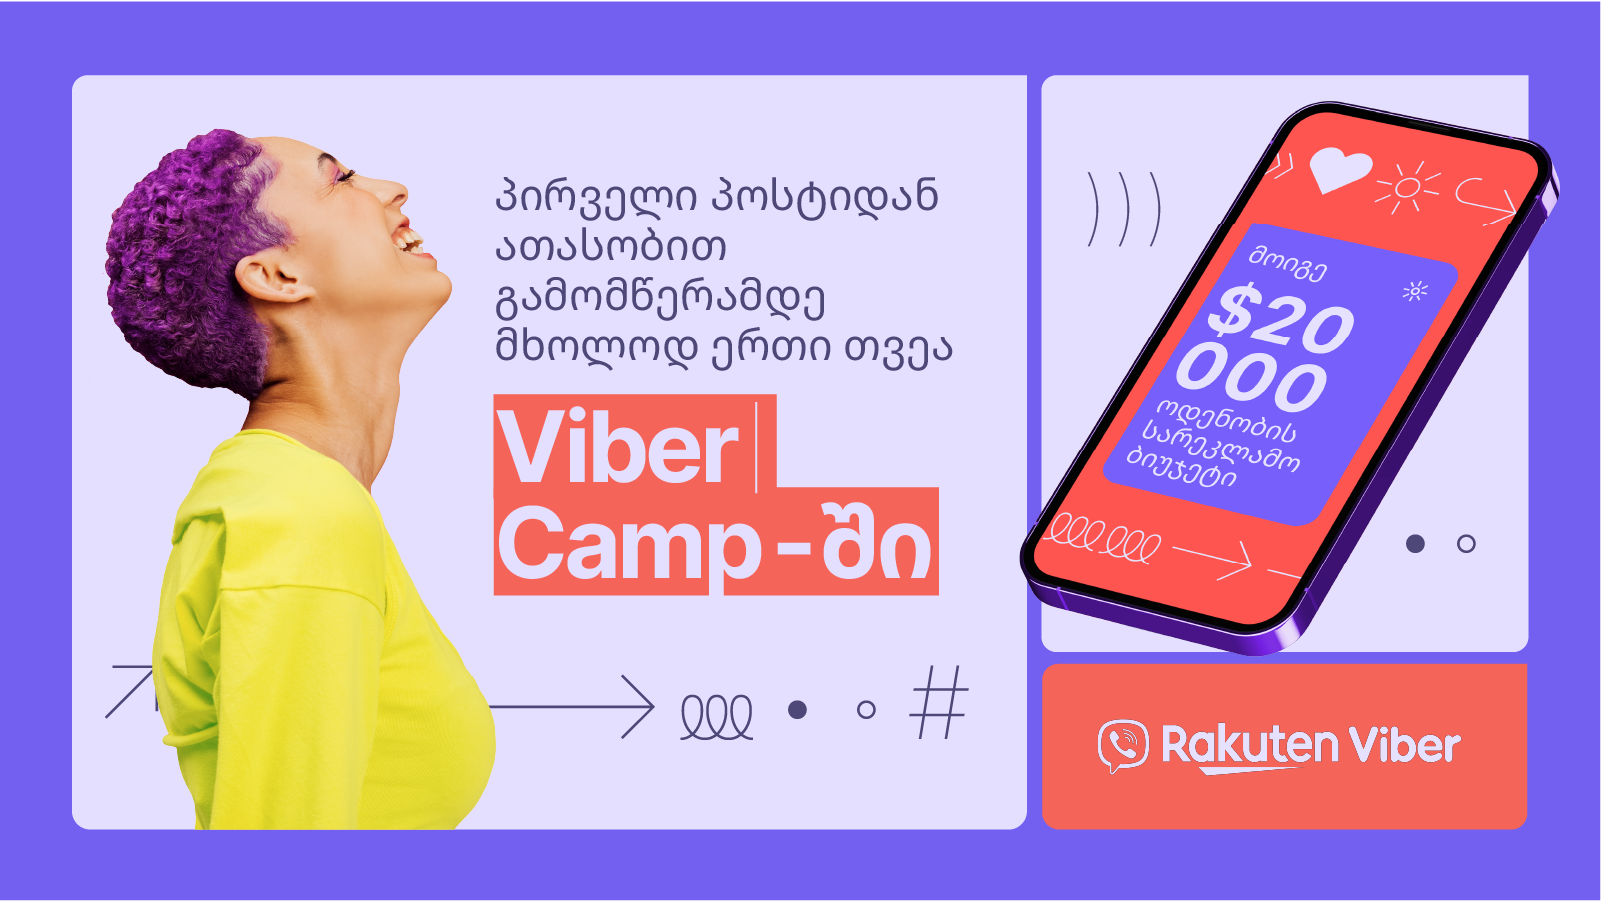 ფართომასშტაბიანი მარათონი კონტენტის შემქმნელებისთვის საქართველოში: Rakuten Viber-მა Viber Camp-ის გამარჯვებულები გამოაცხადა 